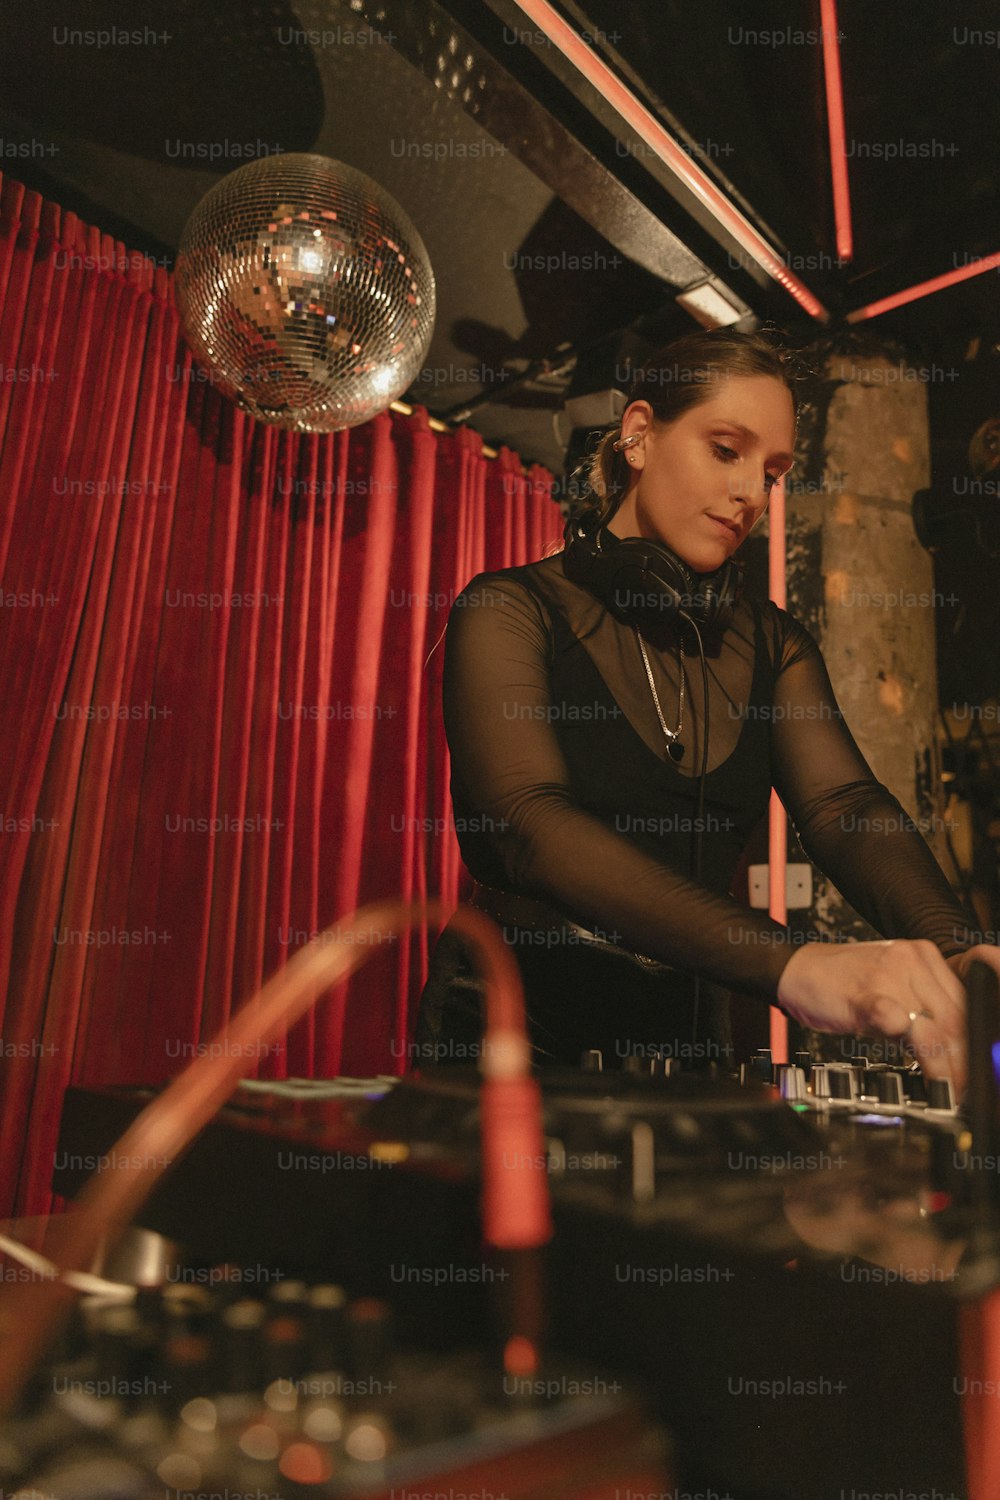 Eine Frau in einem schwarzen Kleid spielt ein DJ-Set